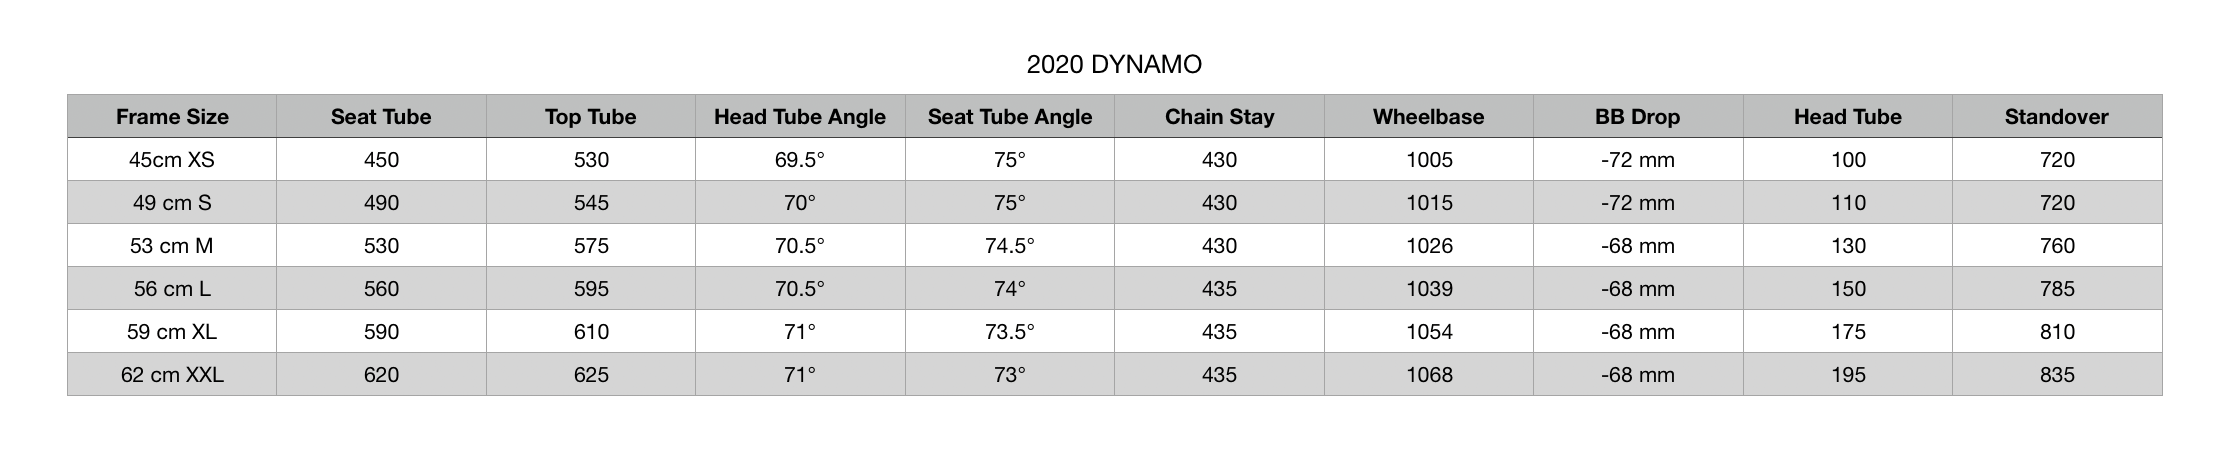 2020 Brodie Dynamo Geometry.png